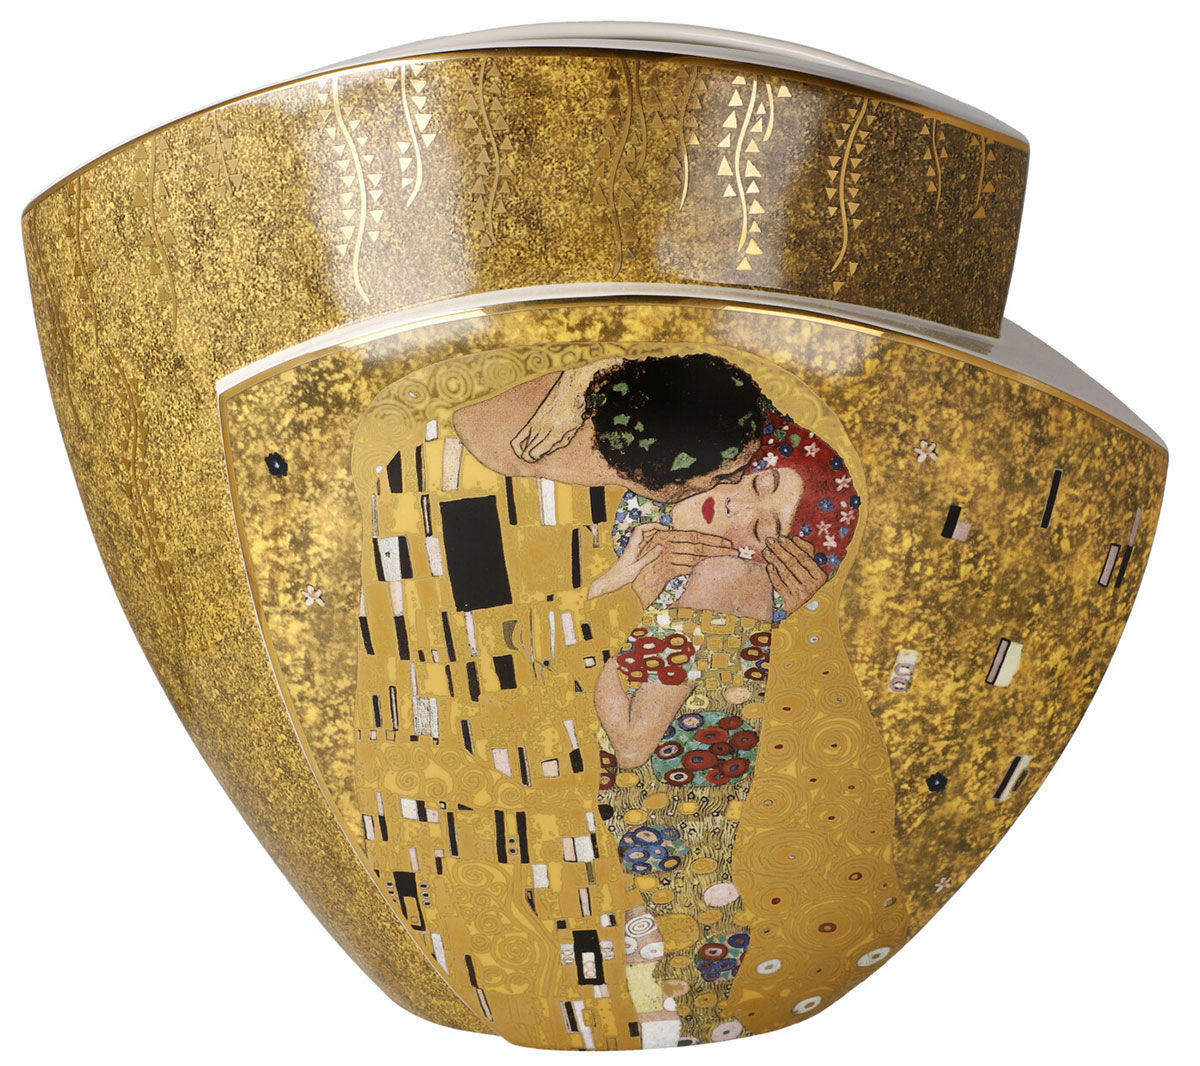 Doppelseitige Porzellanvase "Der Kuss / Adele Bloch-Bauer" mit Golddekor von Gustav Klimt